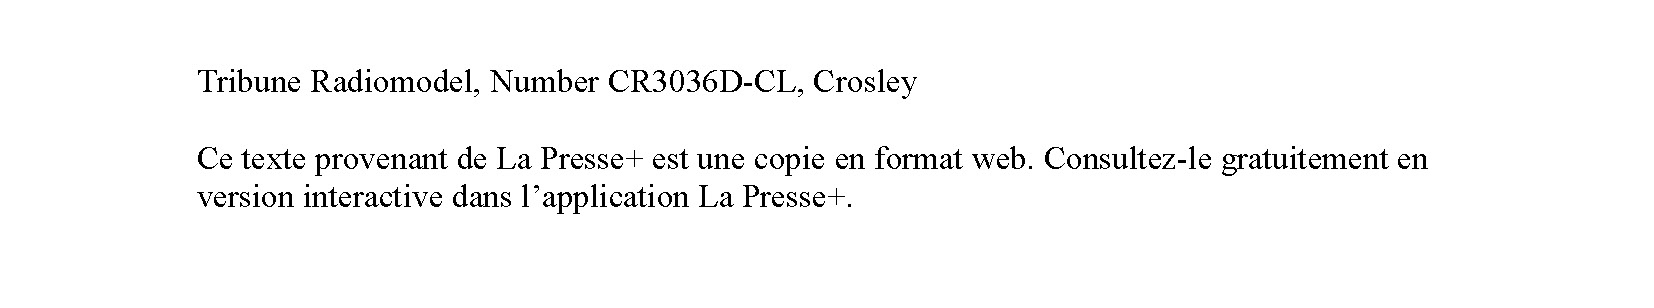 04/12/2020 La Presse